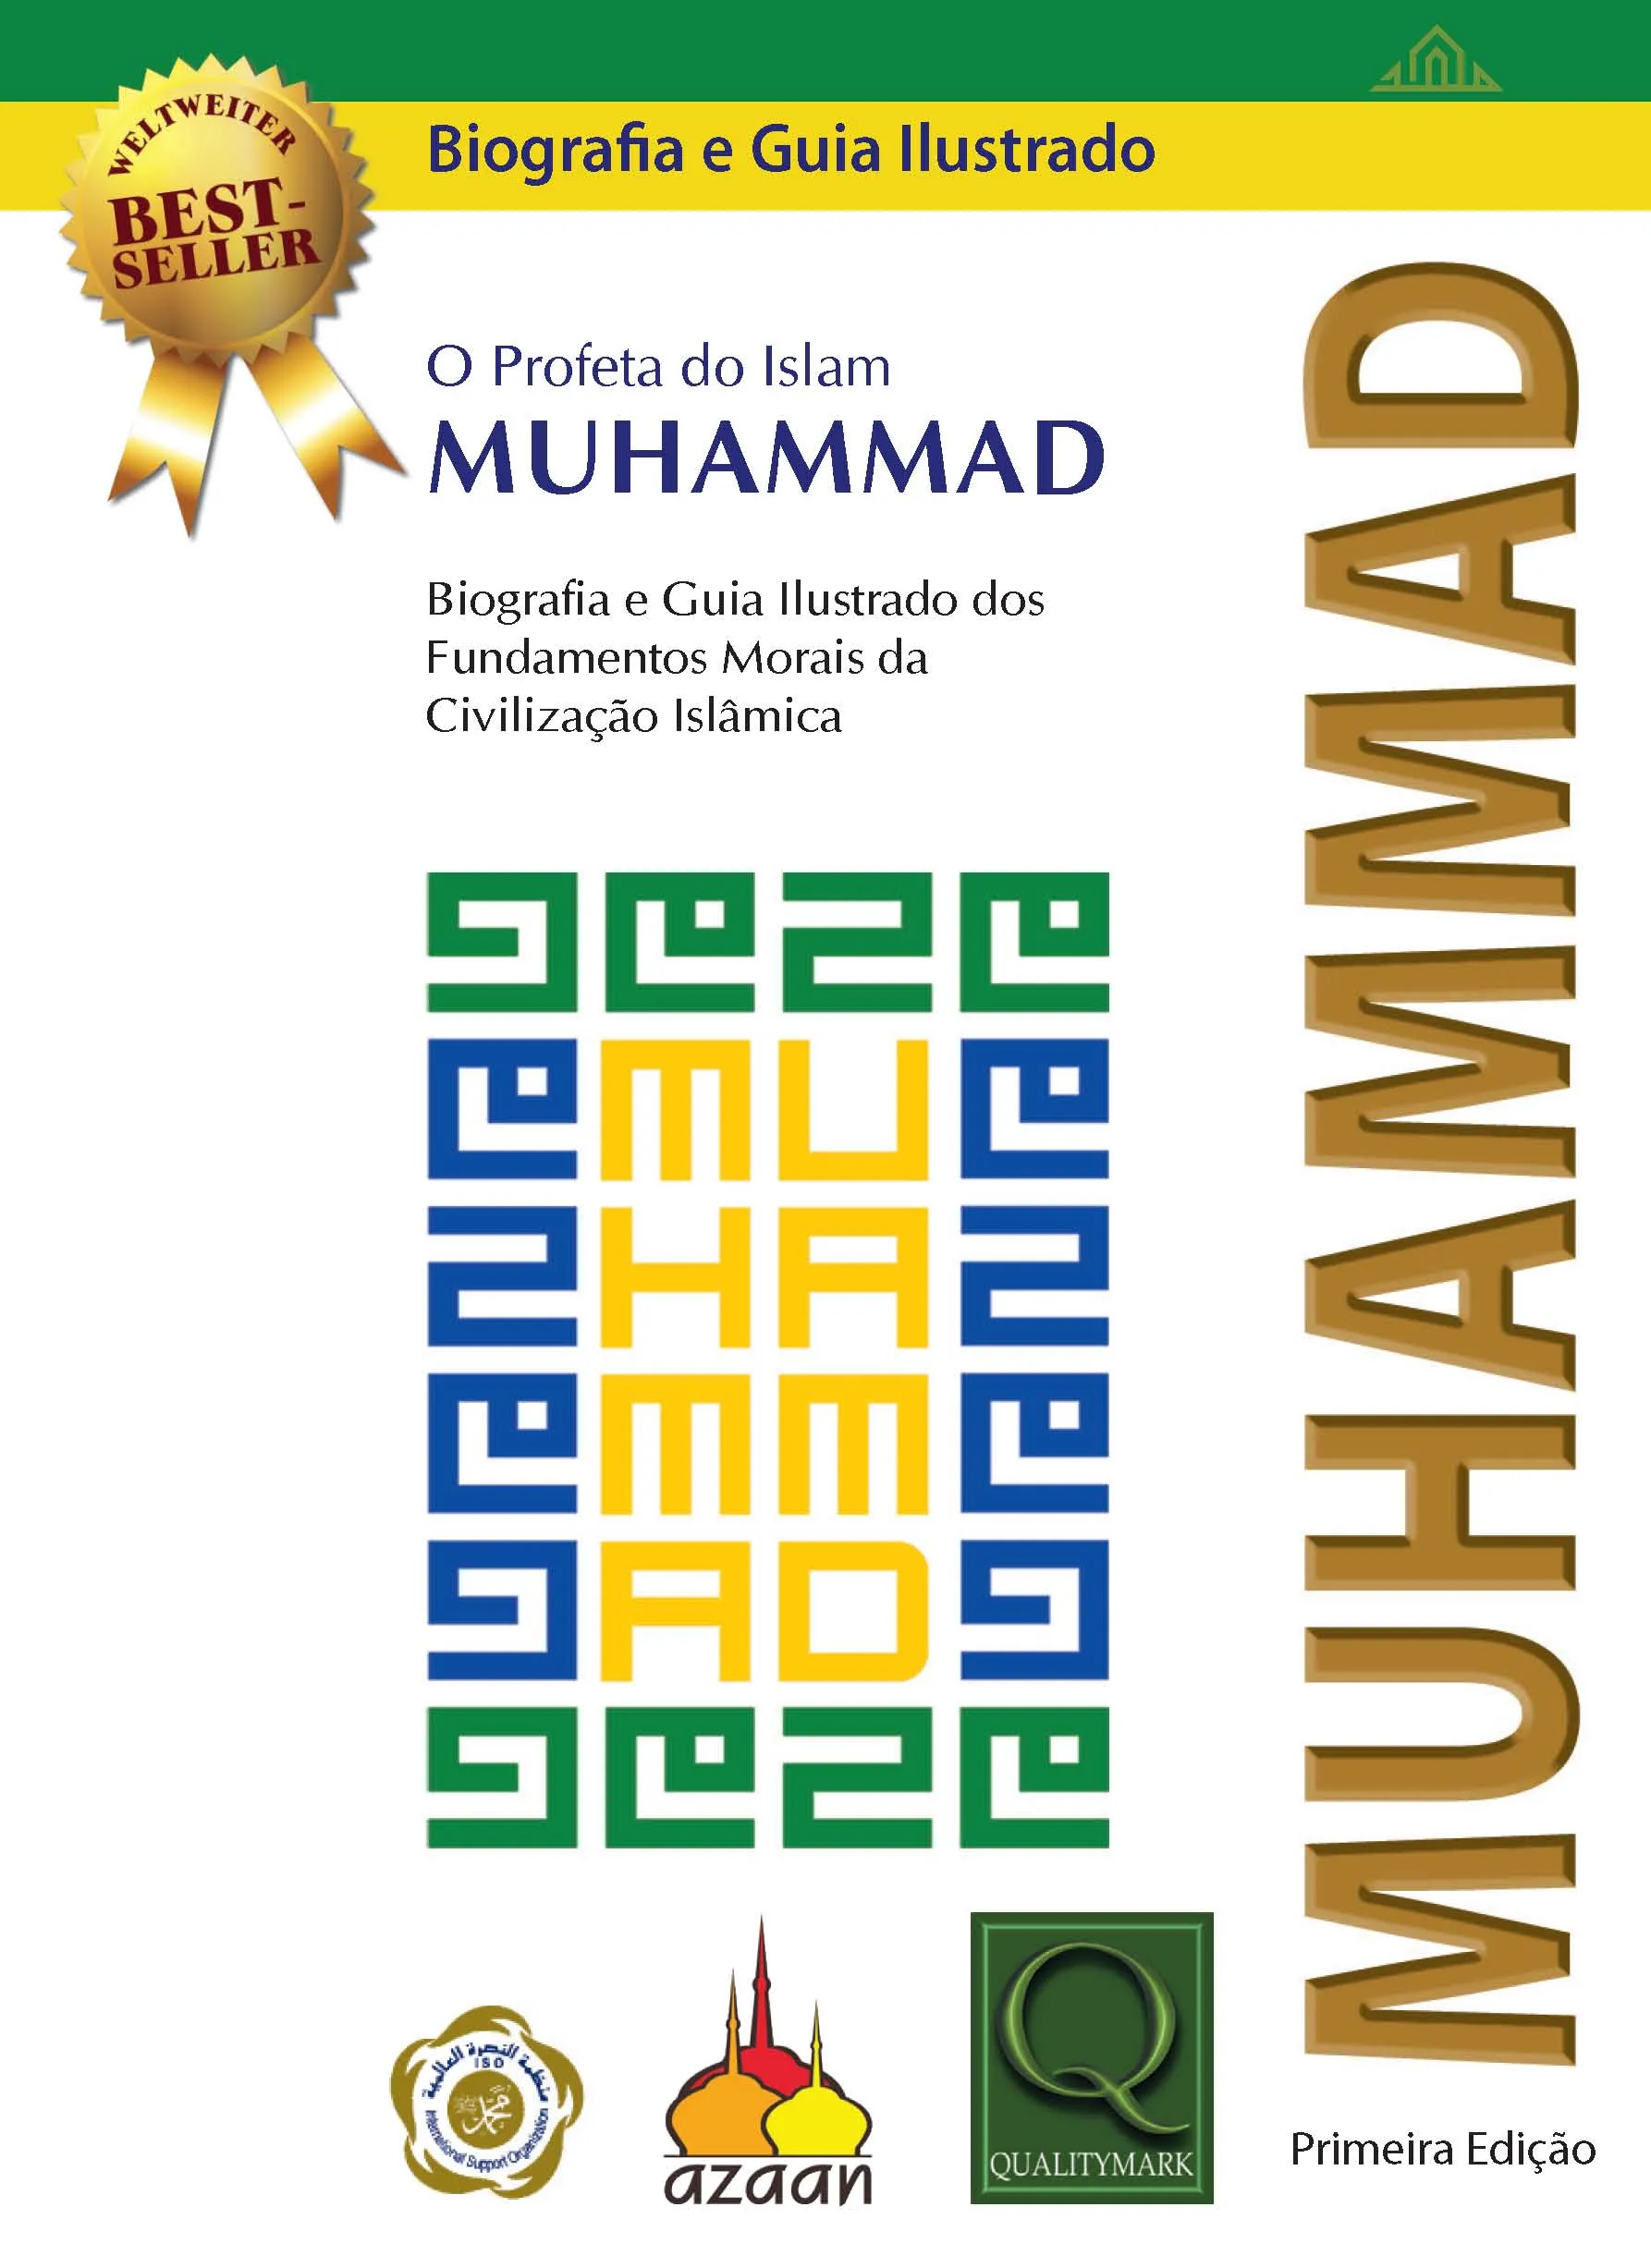 O Profeta Muhammad : Biografia e Guia Ilustrado dos Fundamentos Morais da Civilização Islâmica